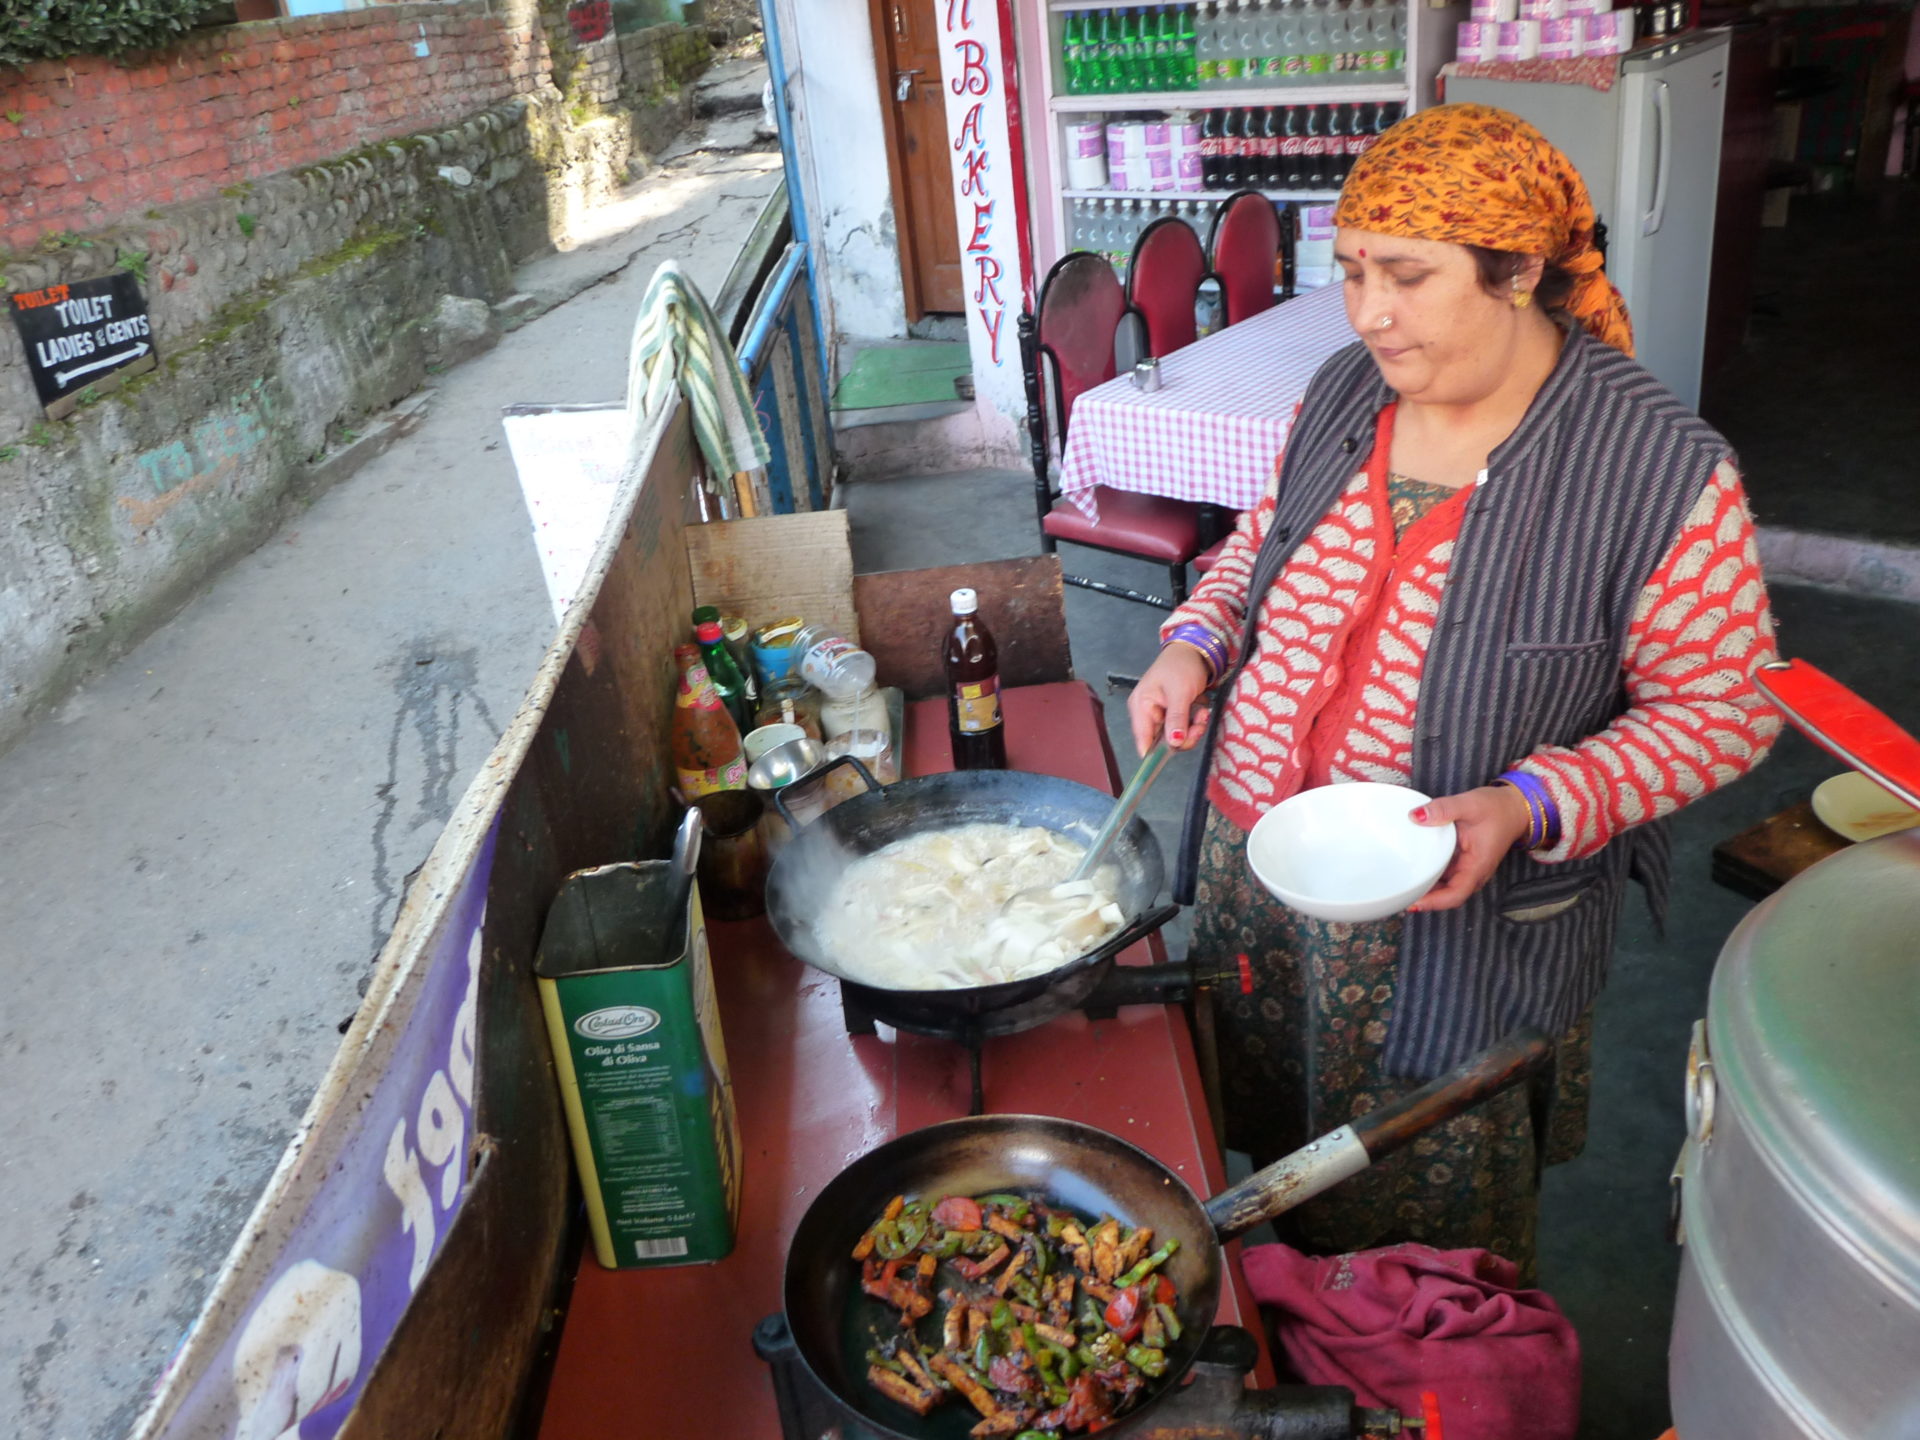 Puja, die tolle Köchin aus dem Lahaul Tal kocht alles frisch in einer offenen Küche